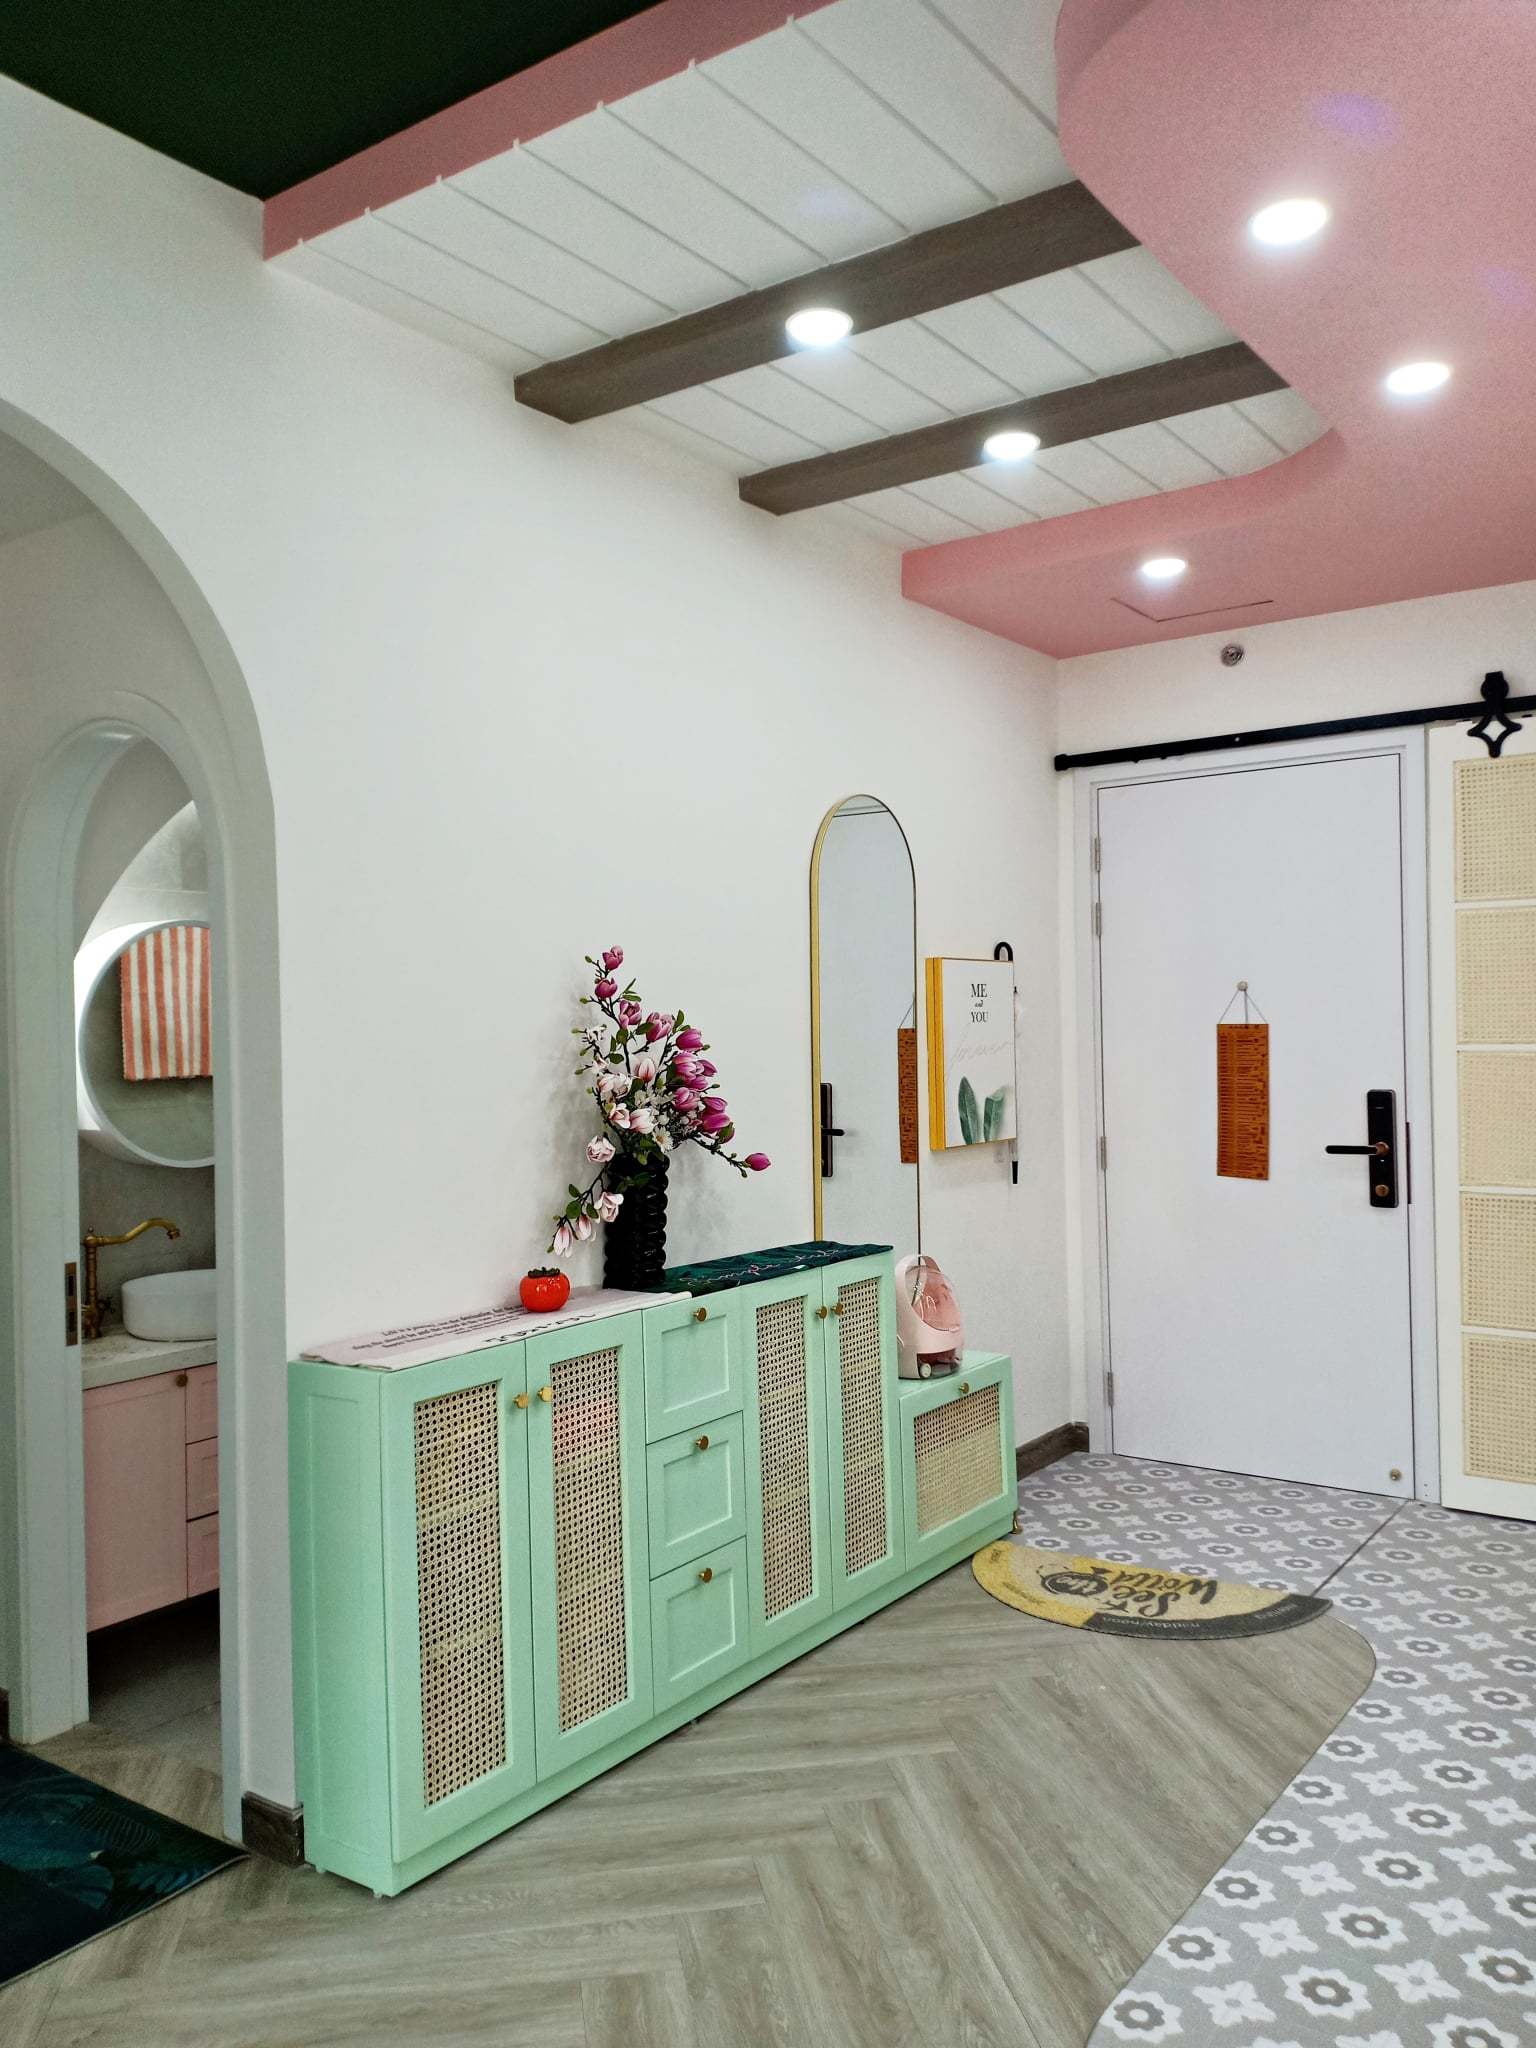 Căn hộ búp bê của nữ gia chủ yêu màu xanh và hồng, dùng thùng gỗ làm giường